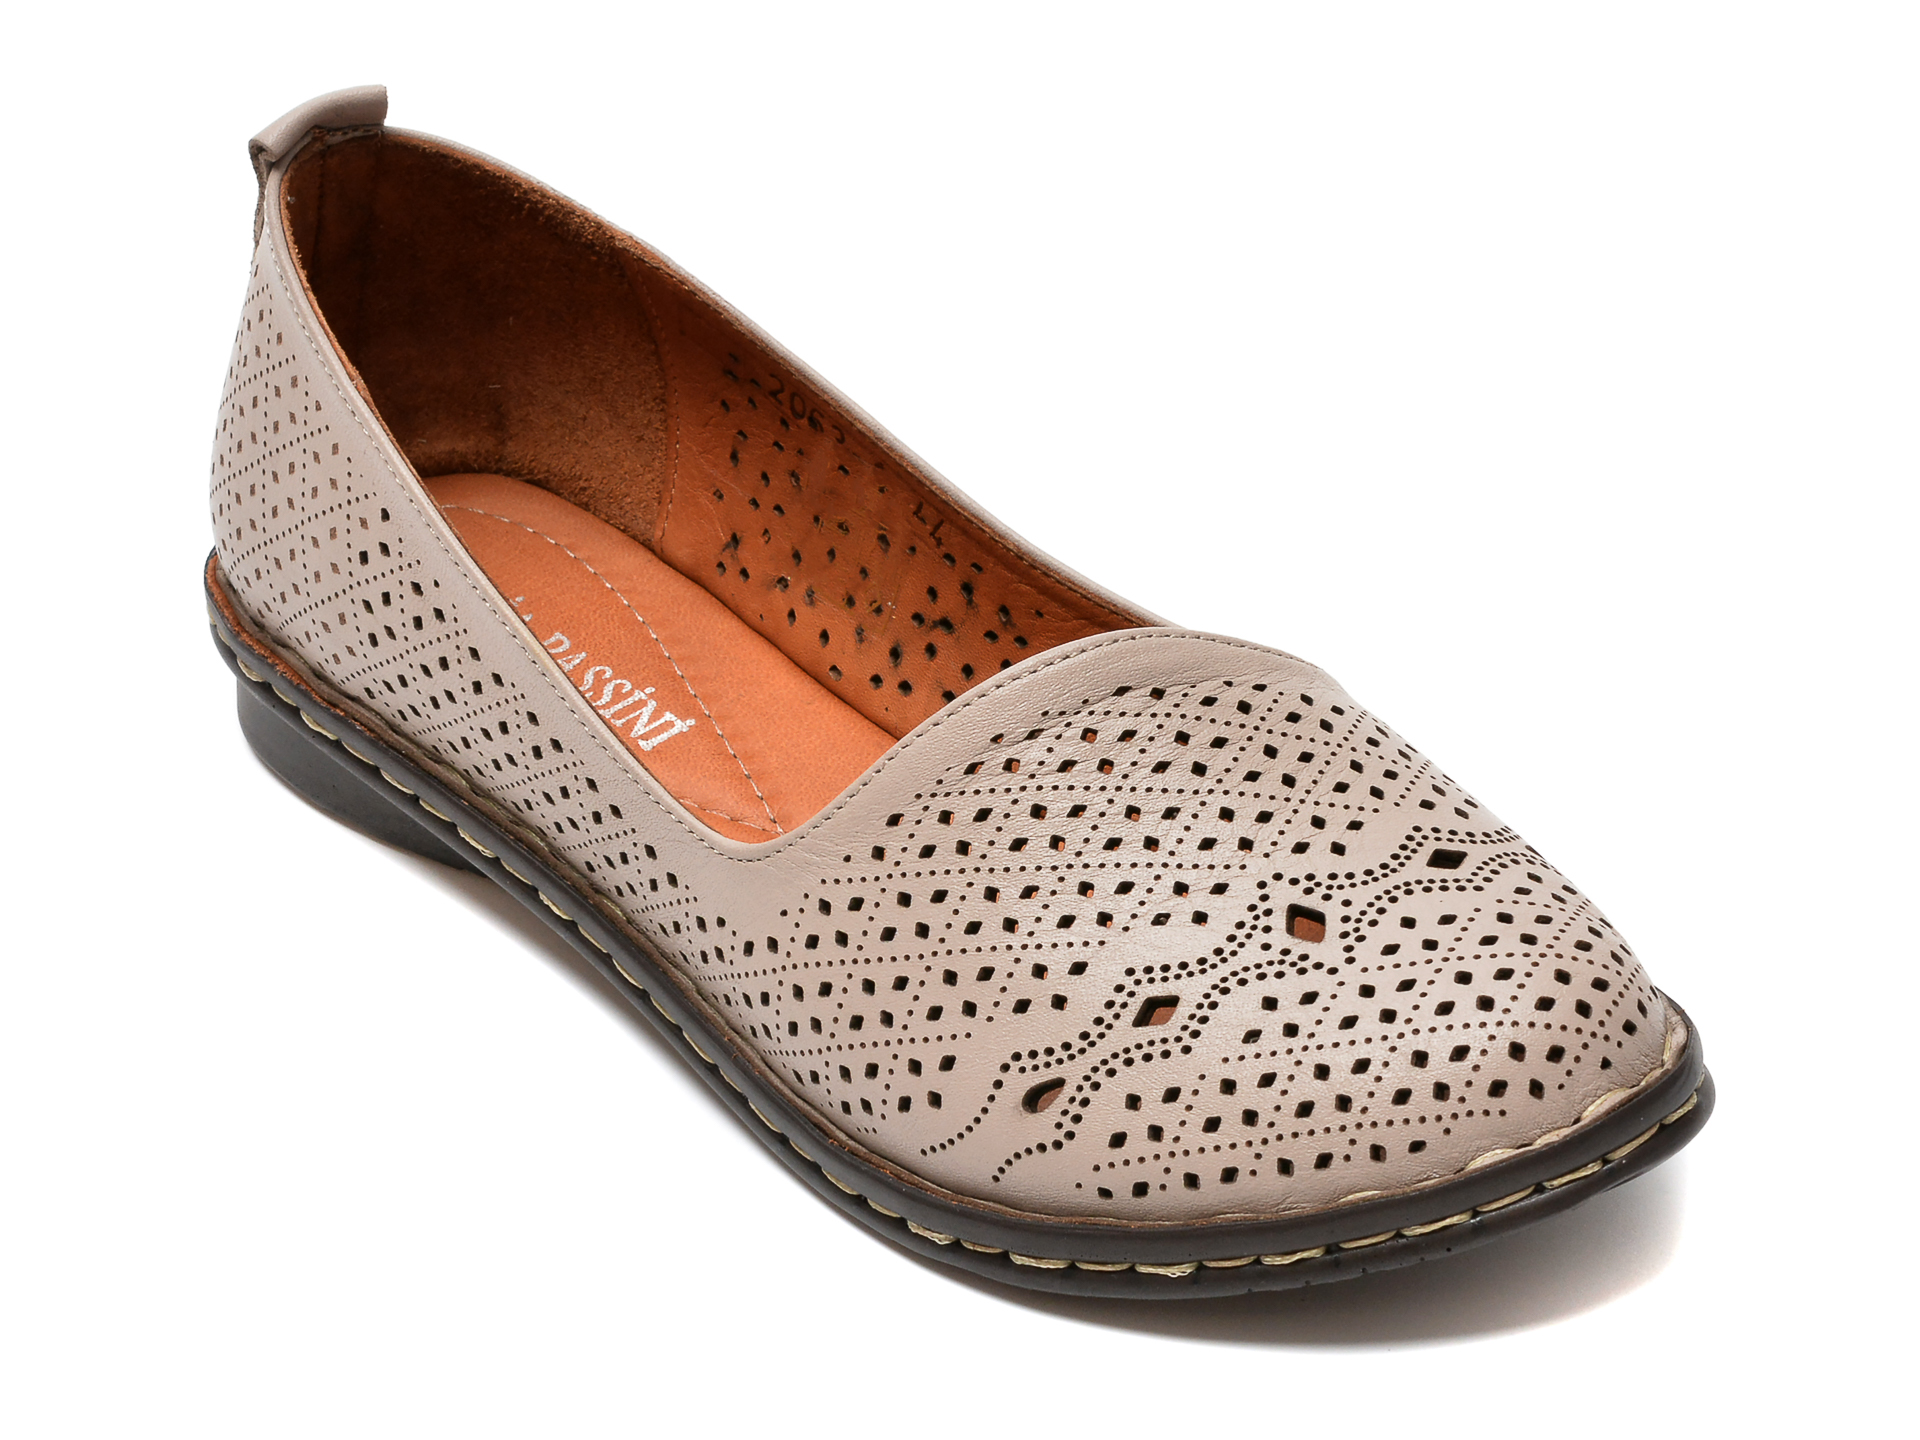 Pantofi FLAVIA PASSINI gri, 952063, din piele naturala Flavia Passini